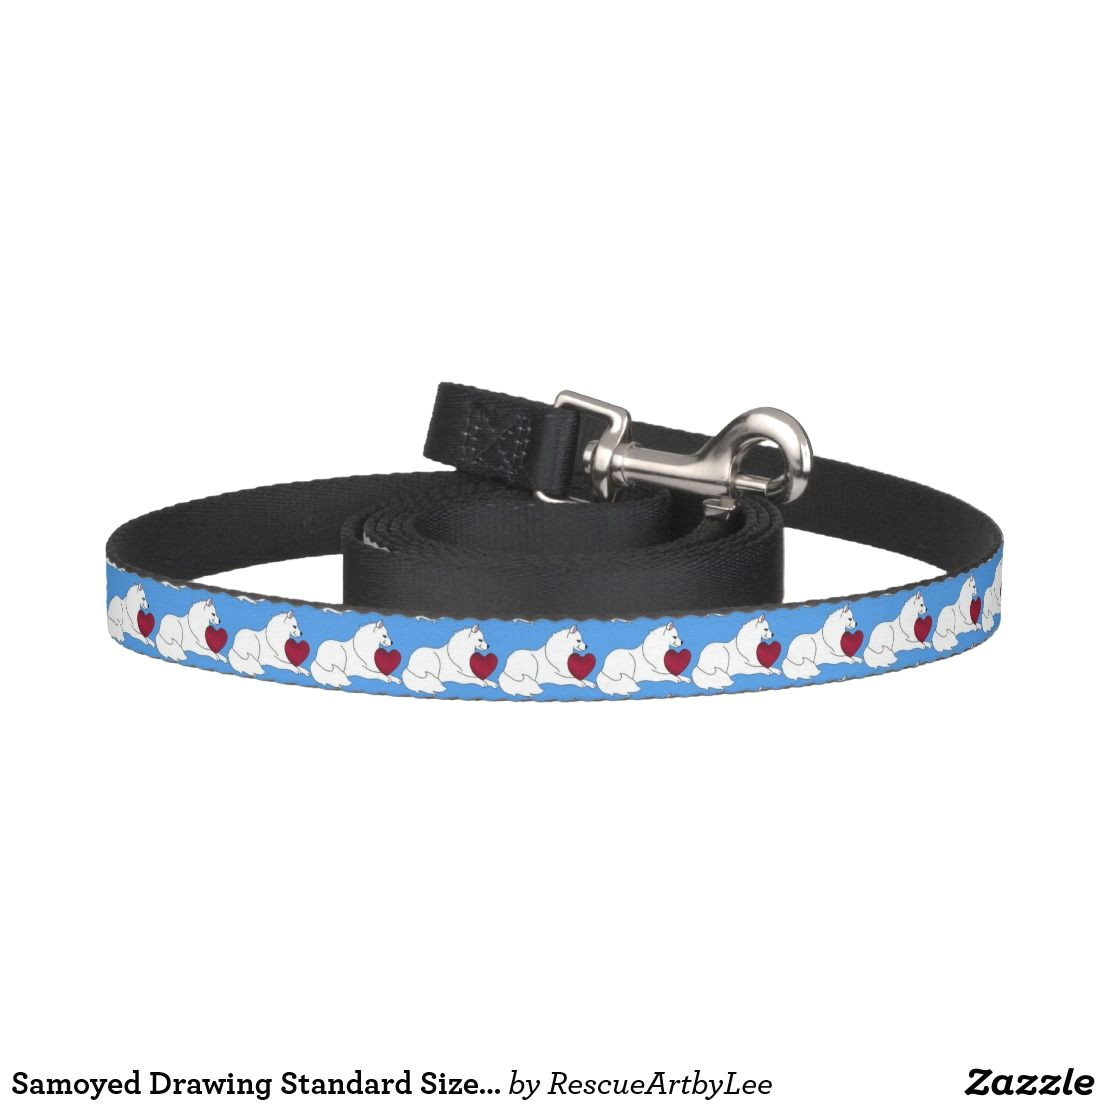 samoyed drawing standard size dog leash black pet leash